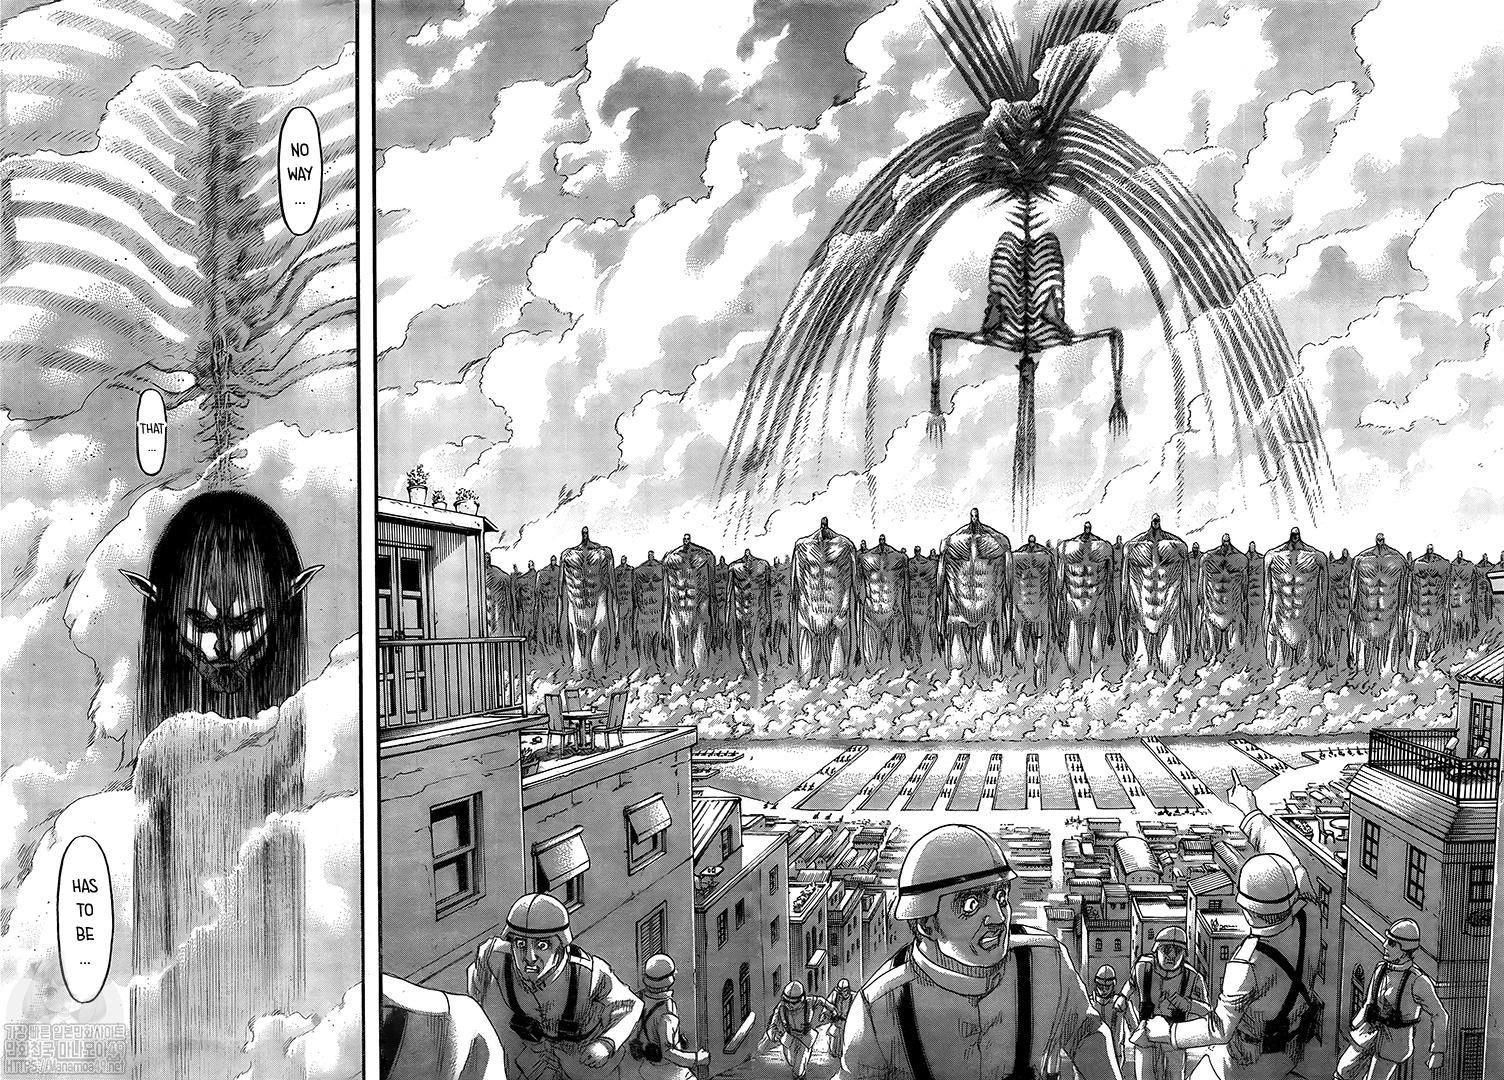 Shingeki No Kyojin Chapter 130. Attack on titan anime, Attack on titan series, Attack on titan